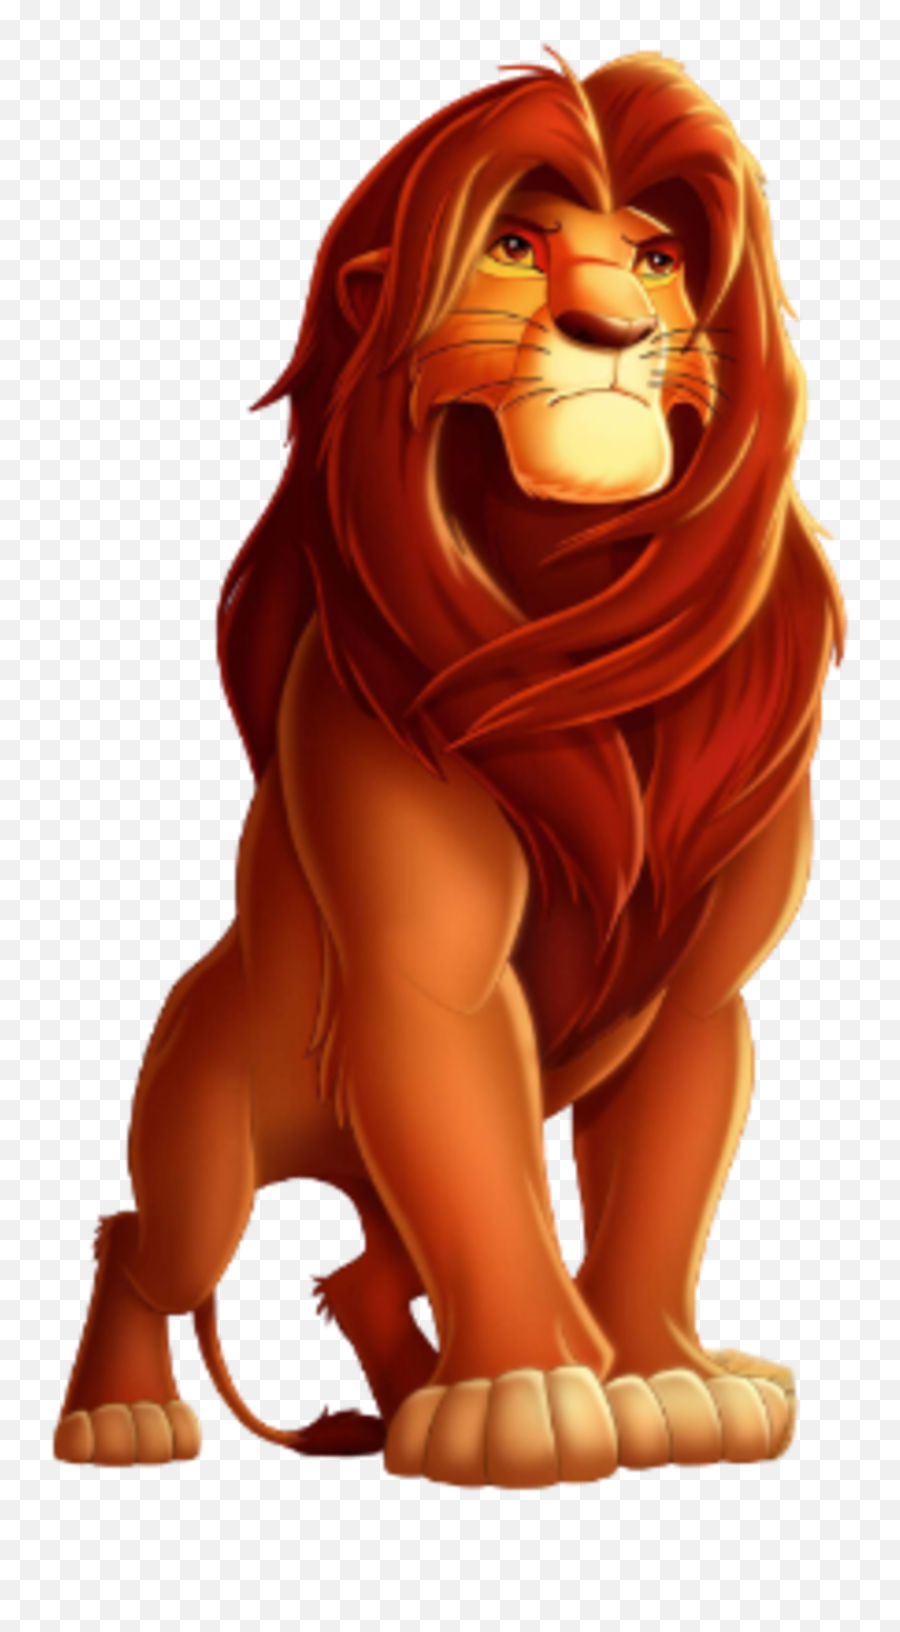 Simba - Lion King Emoji,Lion King Emotions